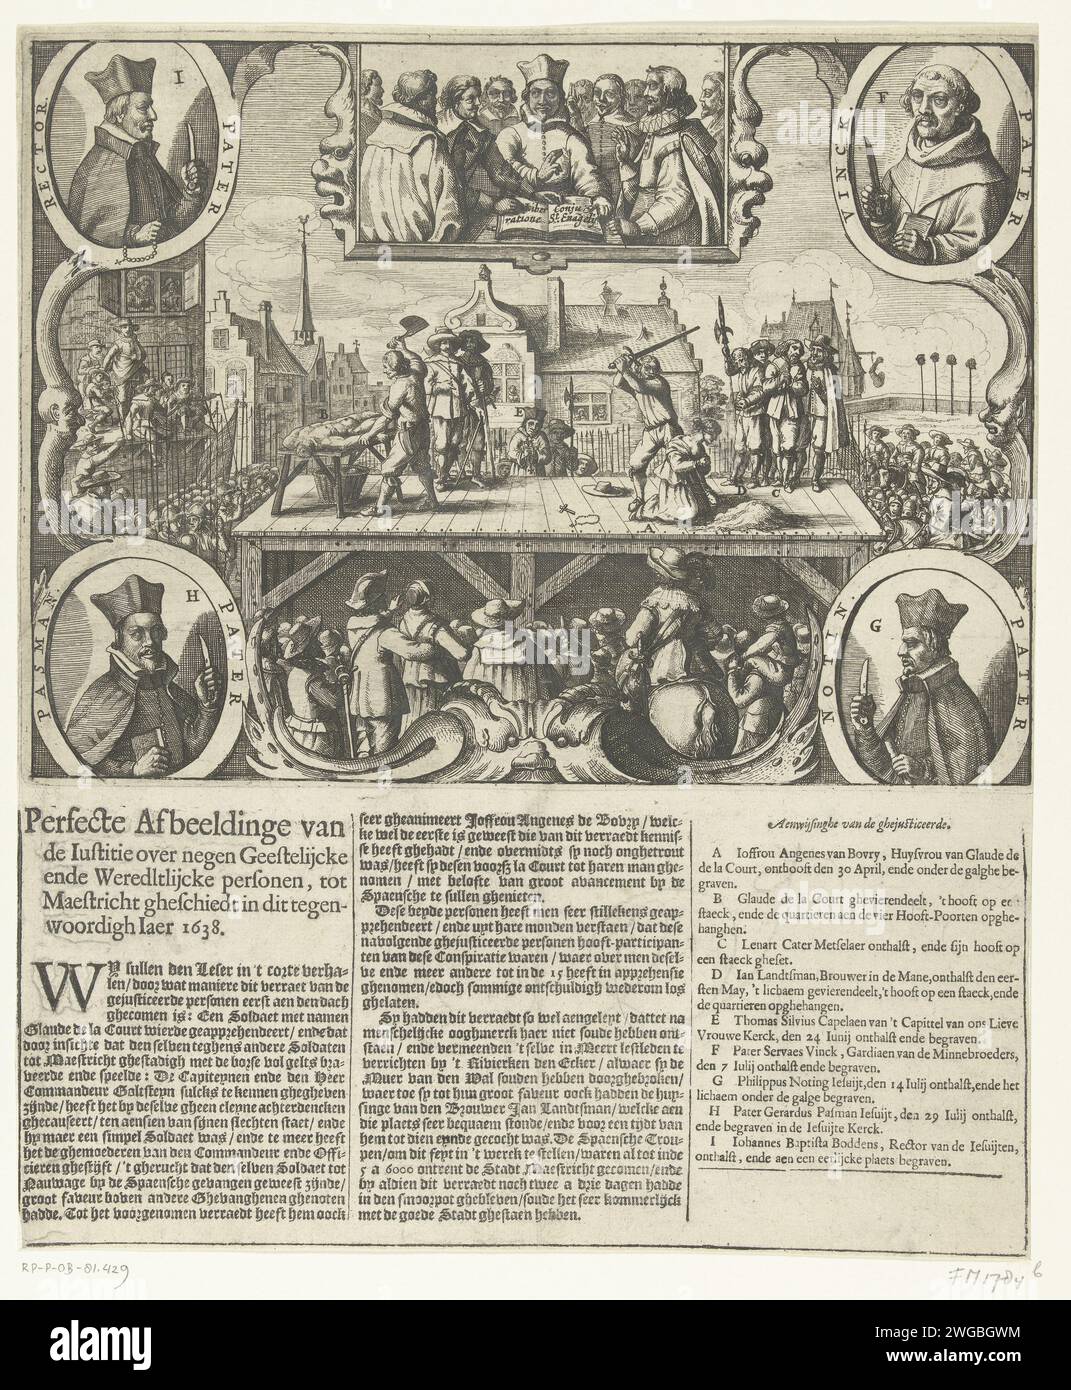 Hinrichtung der neun Menschen, die den Spaniern den Maastricht zu verraten geschworen haben, 1638, 1638 gedruckte Hinrichtungen in Maastricht von den neun Leuten, die den Spaniern den Maastricht verraten, 1638. Auf einem Gerüst wird Claude de la Court gefeiert und seine Frau Angenes van Bovry wird am 30. April 1638 enthauptet. In den Ecken der vier römischen Geistlichen, die an der Verschwörung beteiligt waren und im Juli enthauptet wurden. Oben schwören die neun Verschwörer auf die Bibel. Unter dem Druck ist ein Text aus 3 Spalten mit einer Legende des verurteilten A-I gedruckt. Drücken Sie ohne Adresse. Nord-Niederlande S Stockfoto